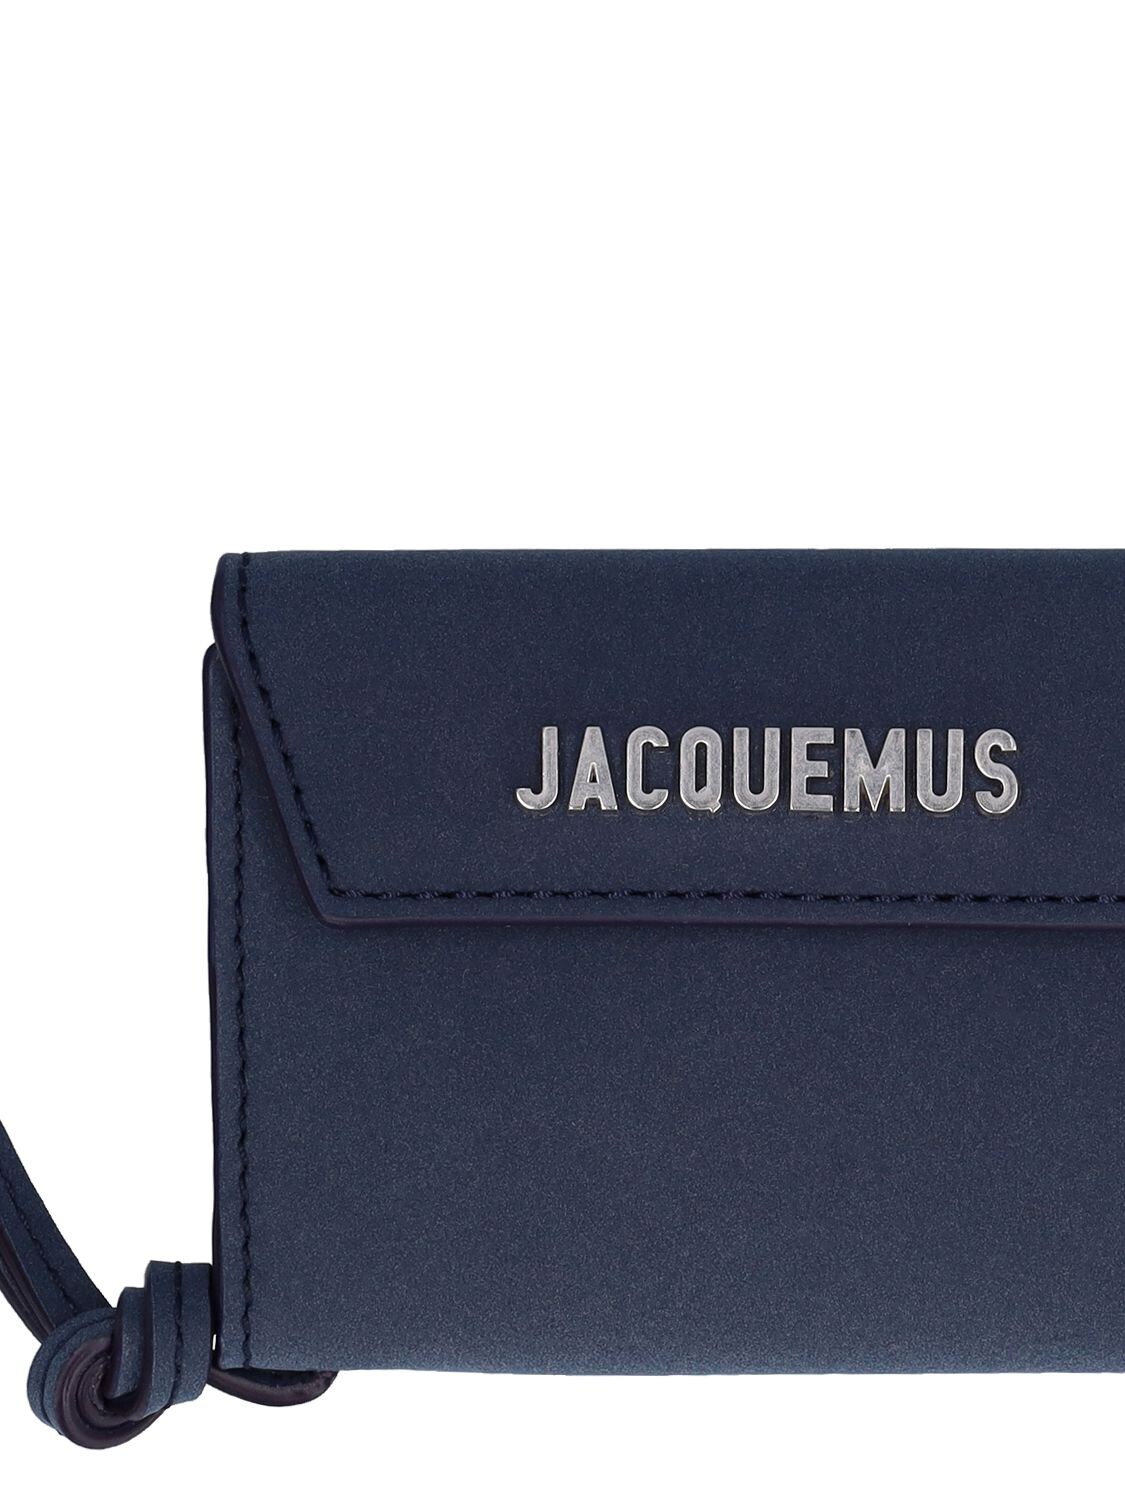 LE PORTE JACQUEMUS WALLET for Men - Jacquemus